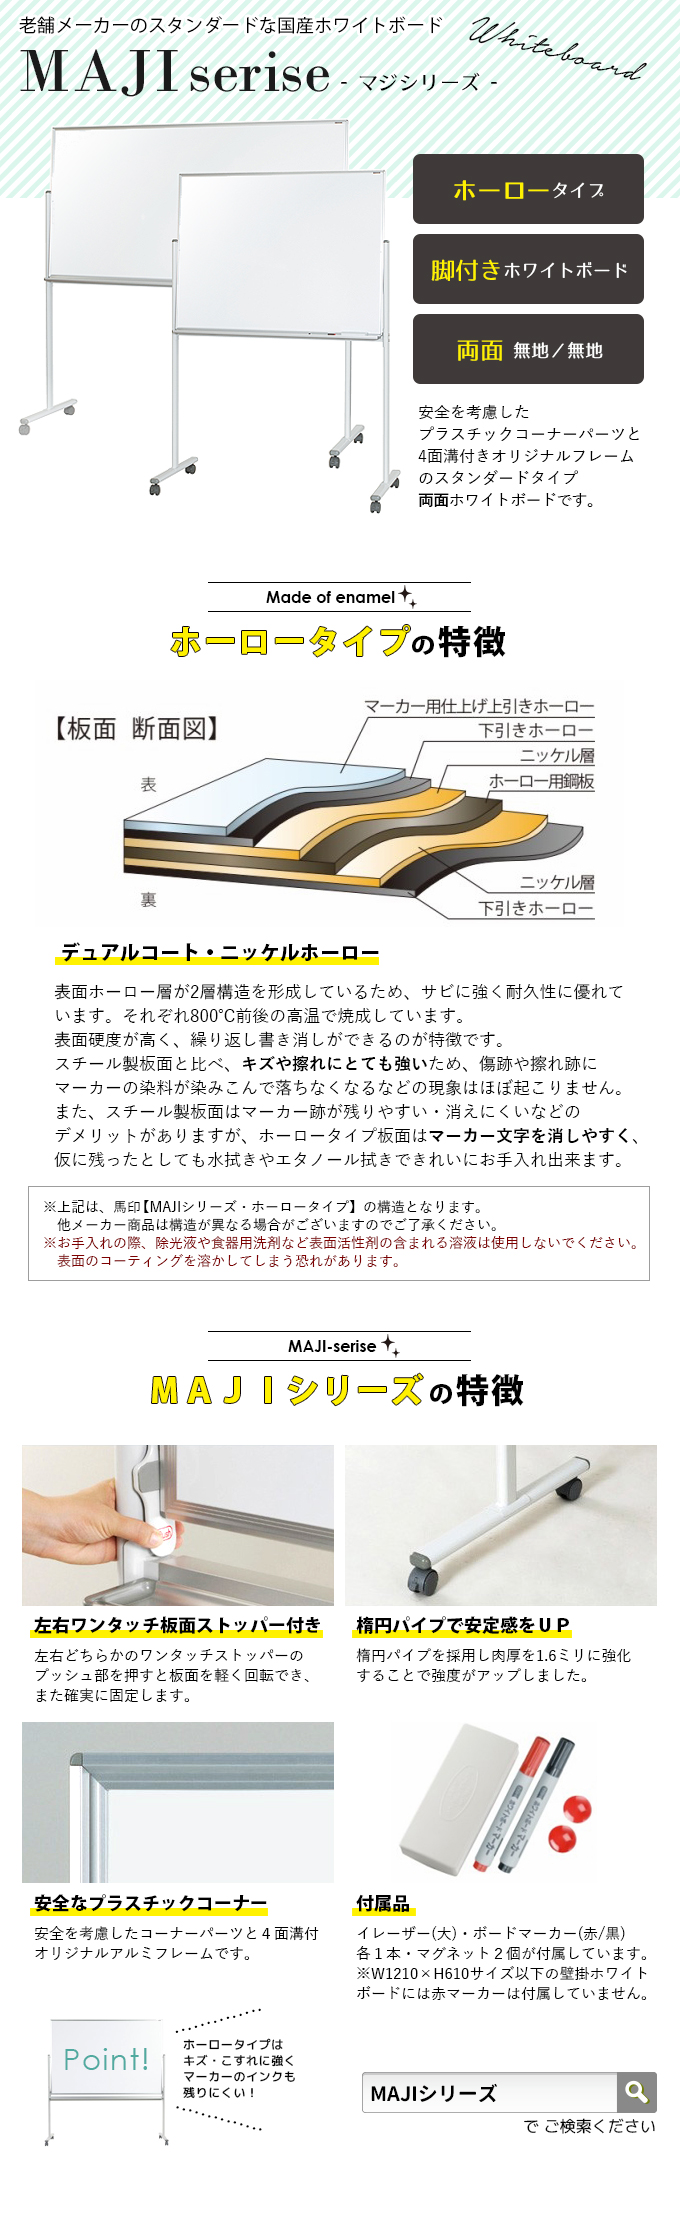 海外最新 馬印 MAJI series マジシリーズ 壁掛 無地ホワイトボード W1810×H1210mm MH46 fucoa.cl